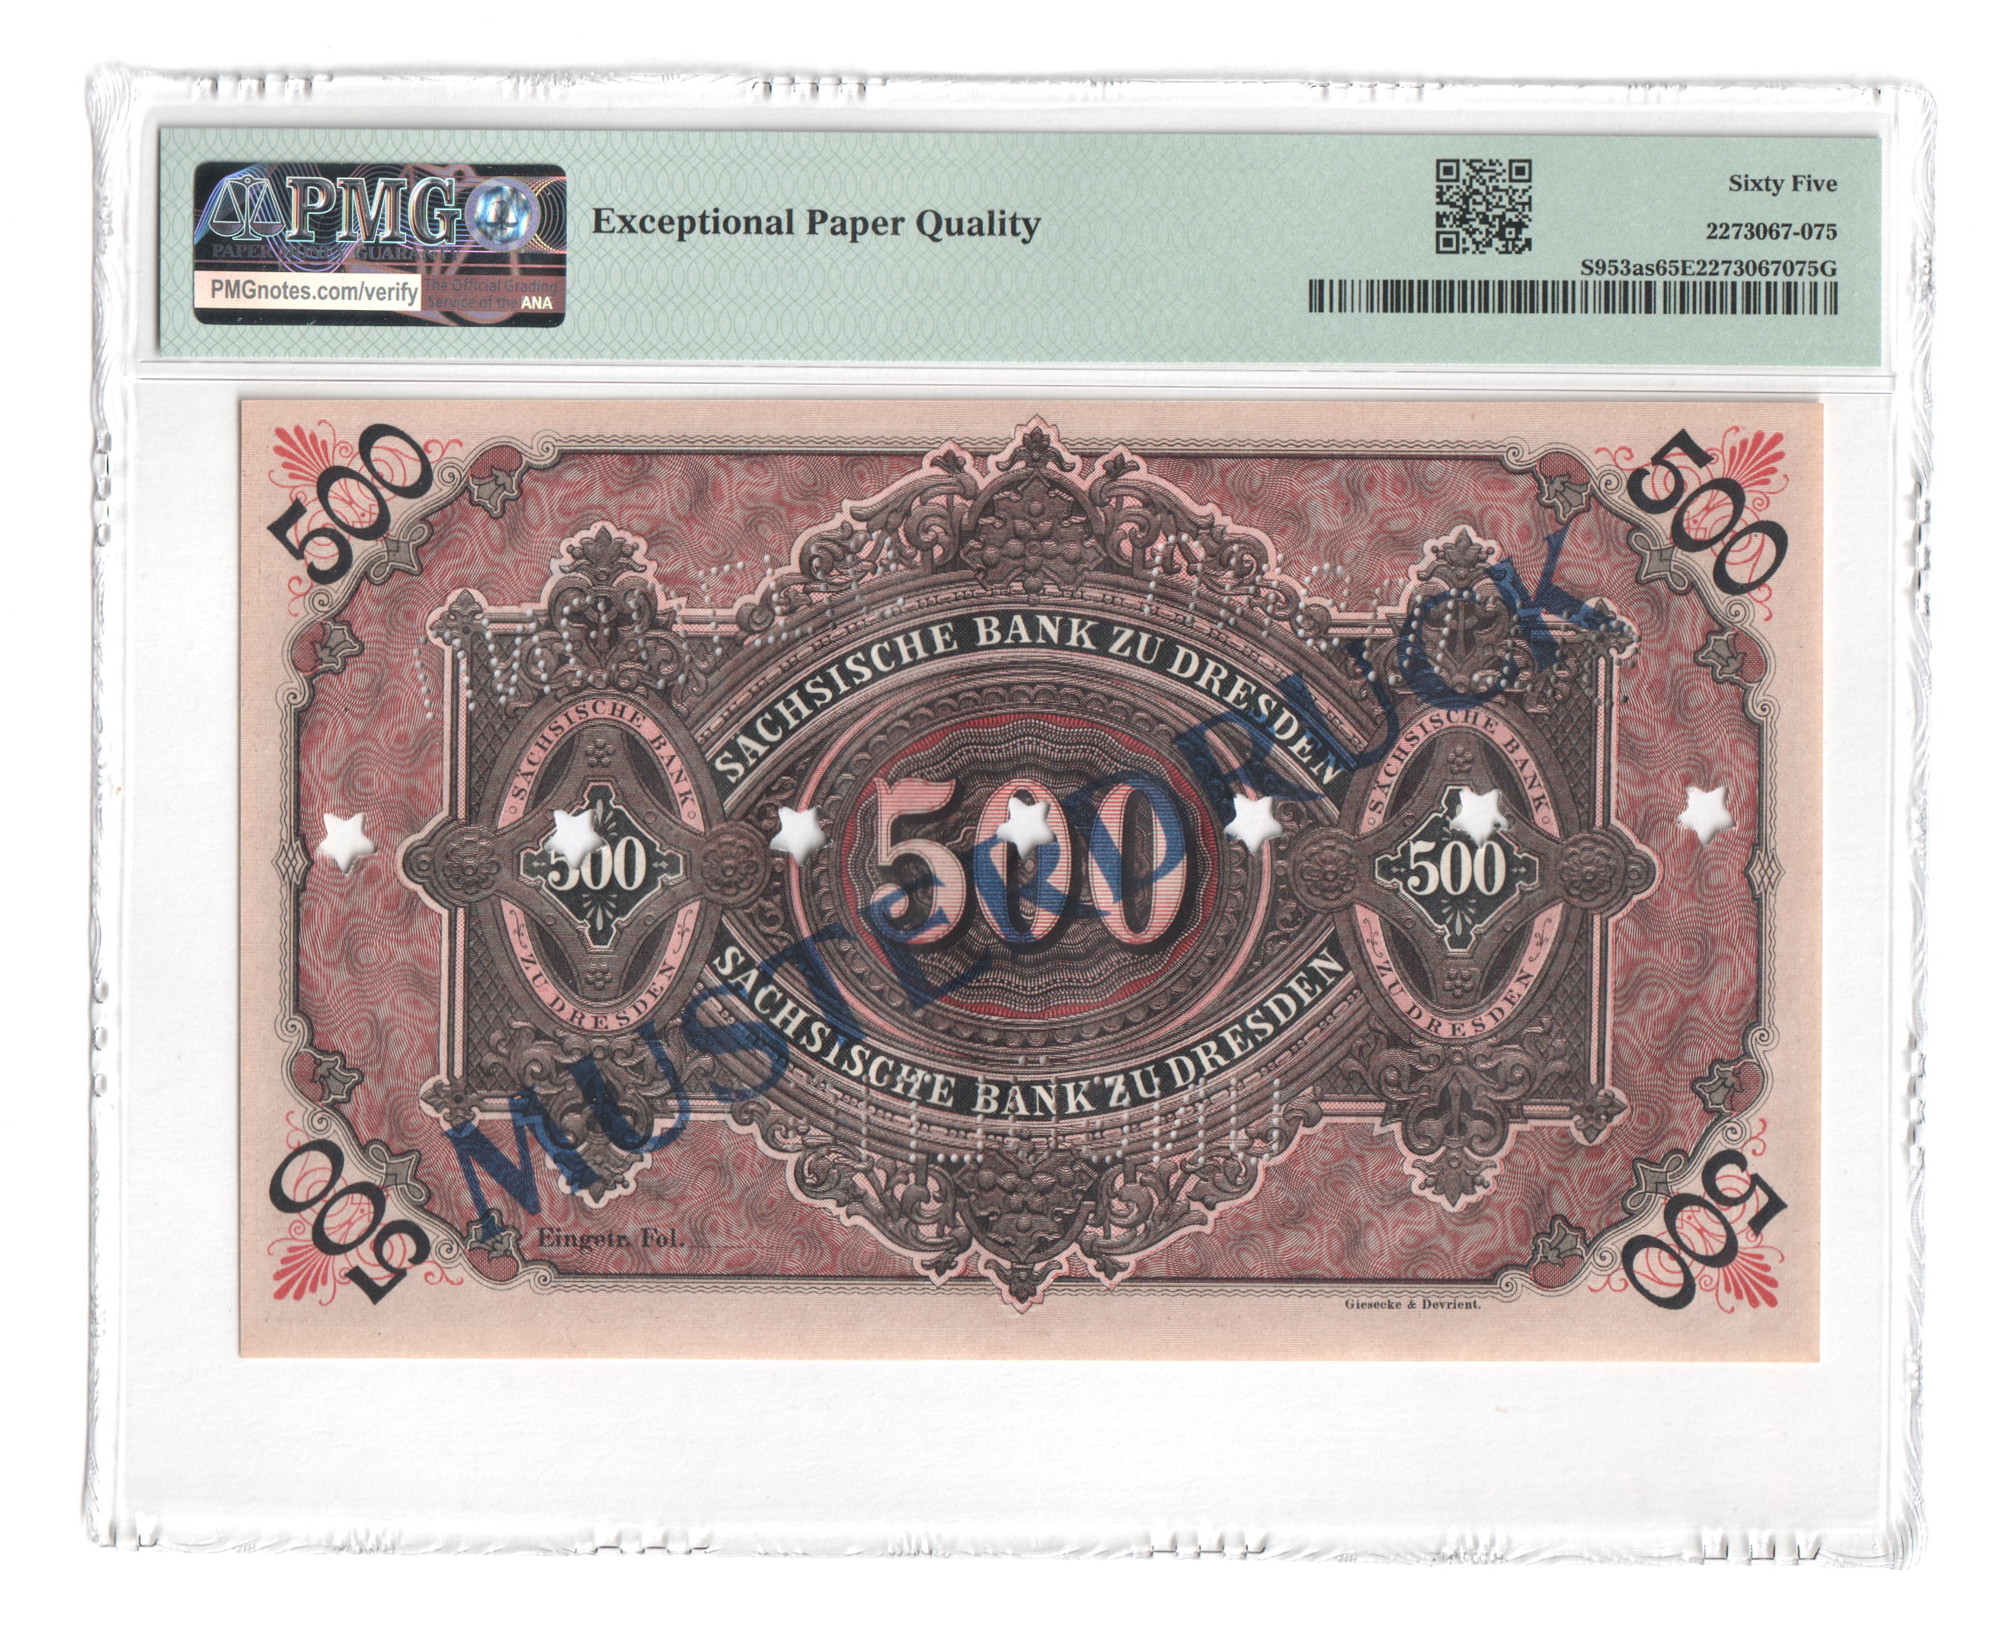 German States Dresden Sachsische Bank 500 Mark 1890 Specimen PMG 65 EPQ |  Katz Auction